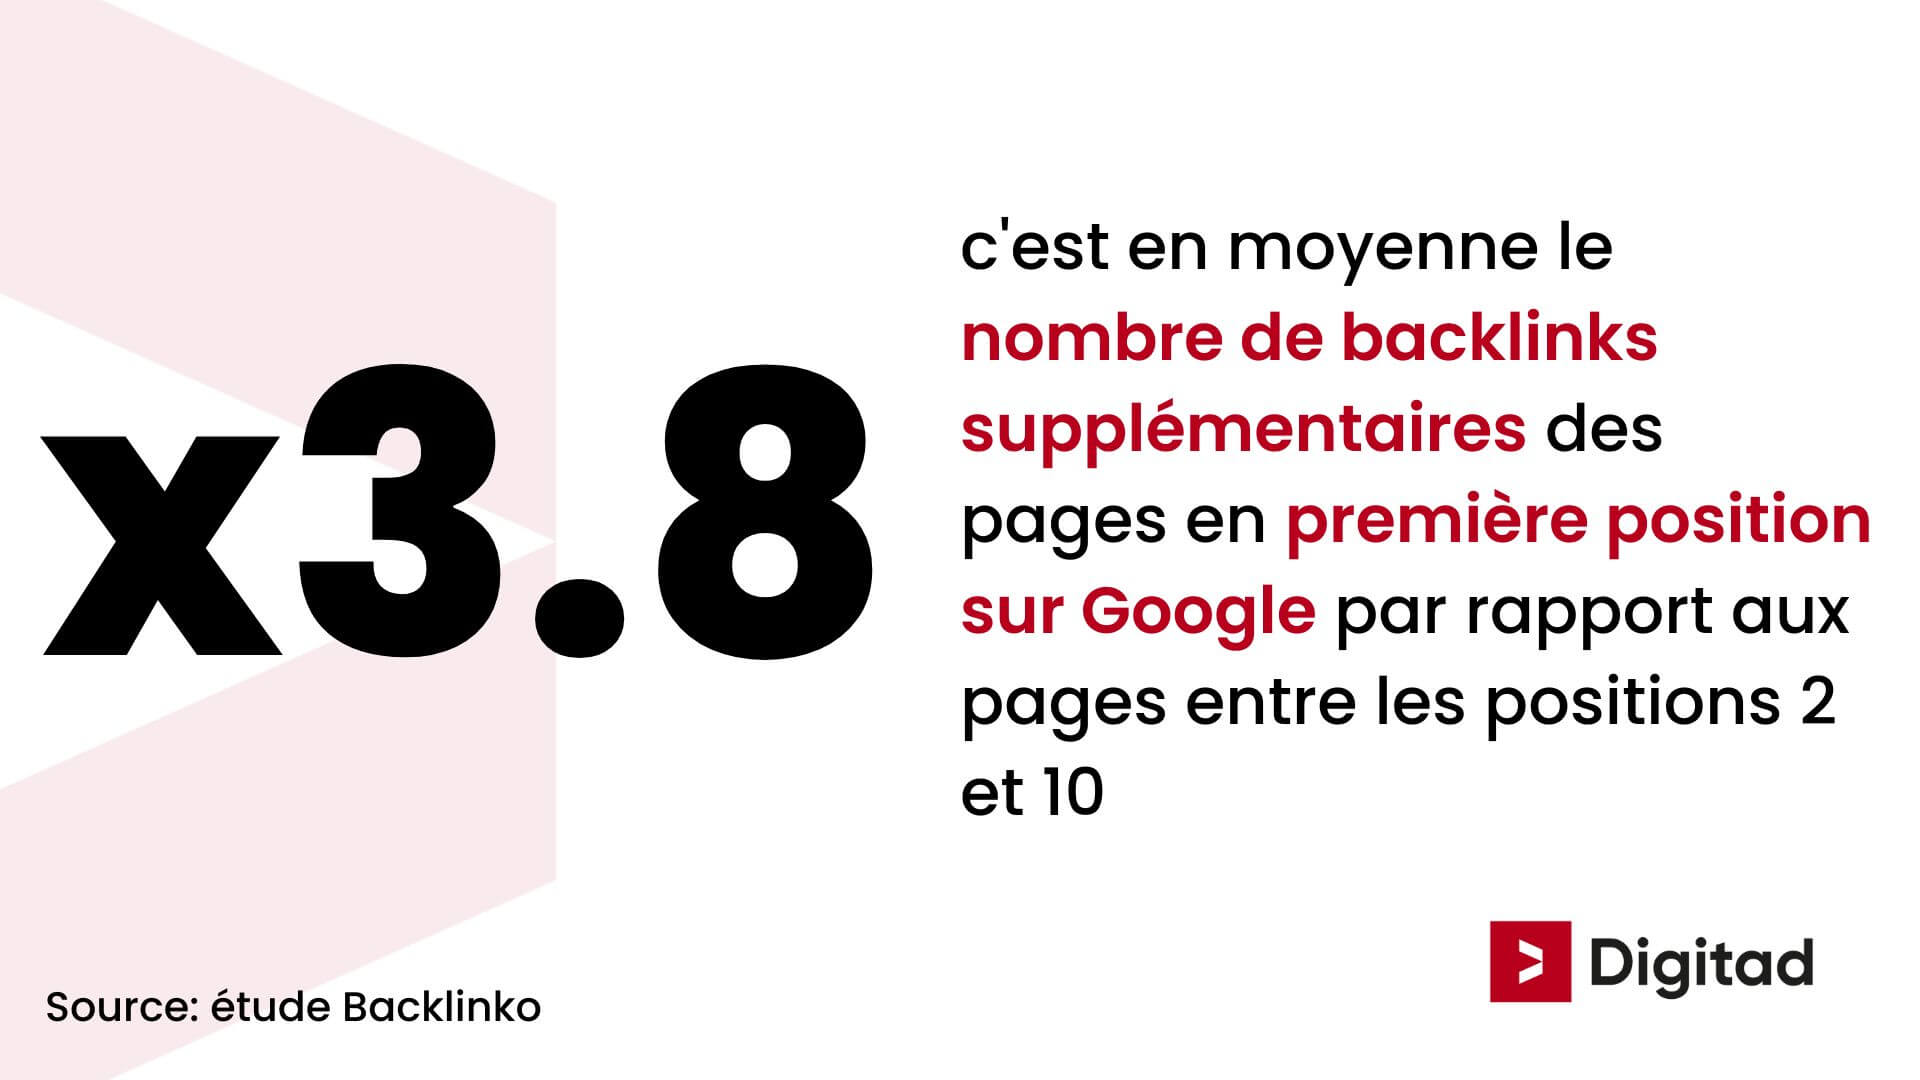 x3.8 c'est en moyenne le nombre de backlinks supplémentaires des pages en première position sur Google par rapport aux pages entre les positions 2 et 10